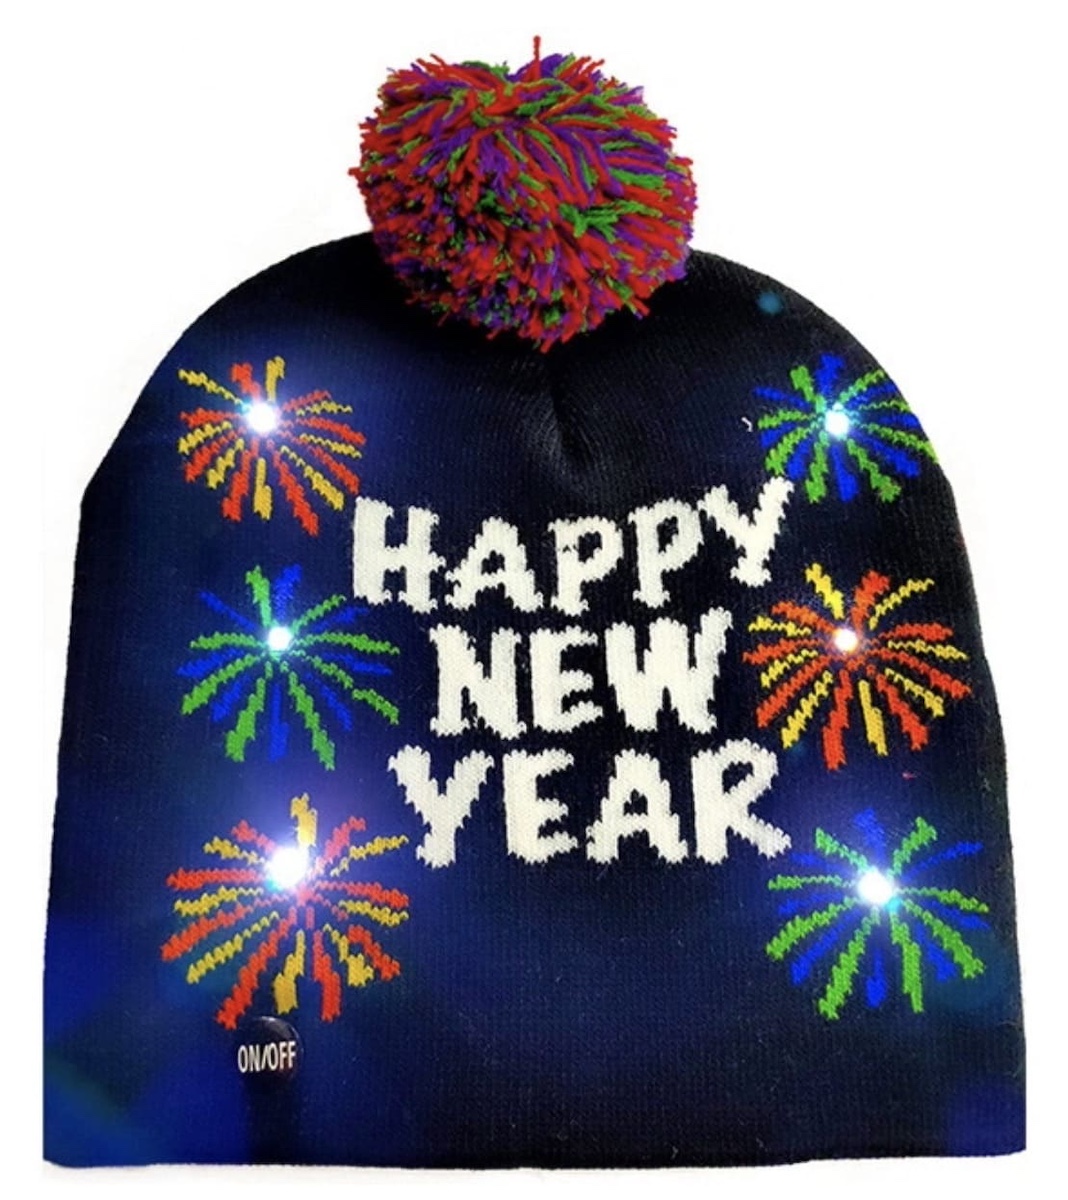 冬季针织圣诞发光帽子带 LED 灯泡 - 新年快乐